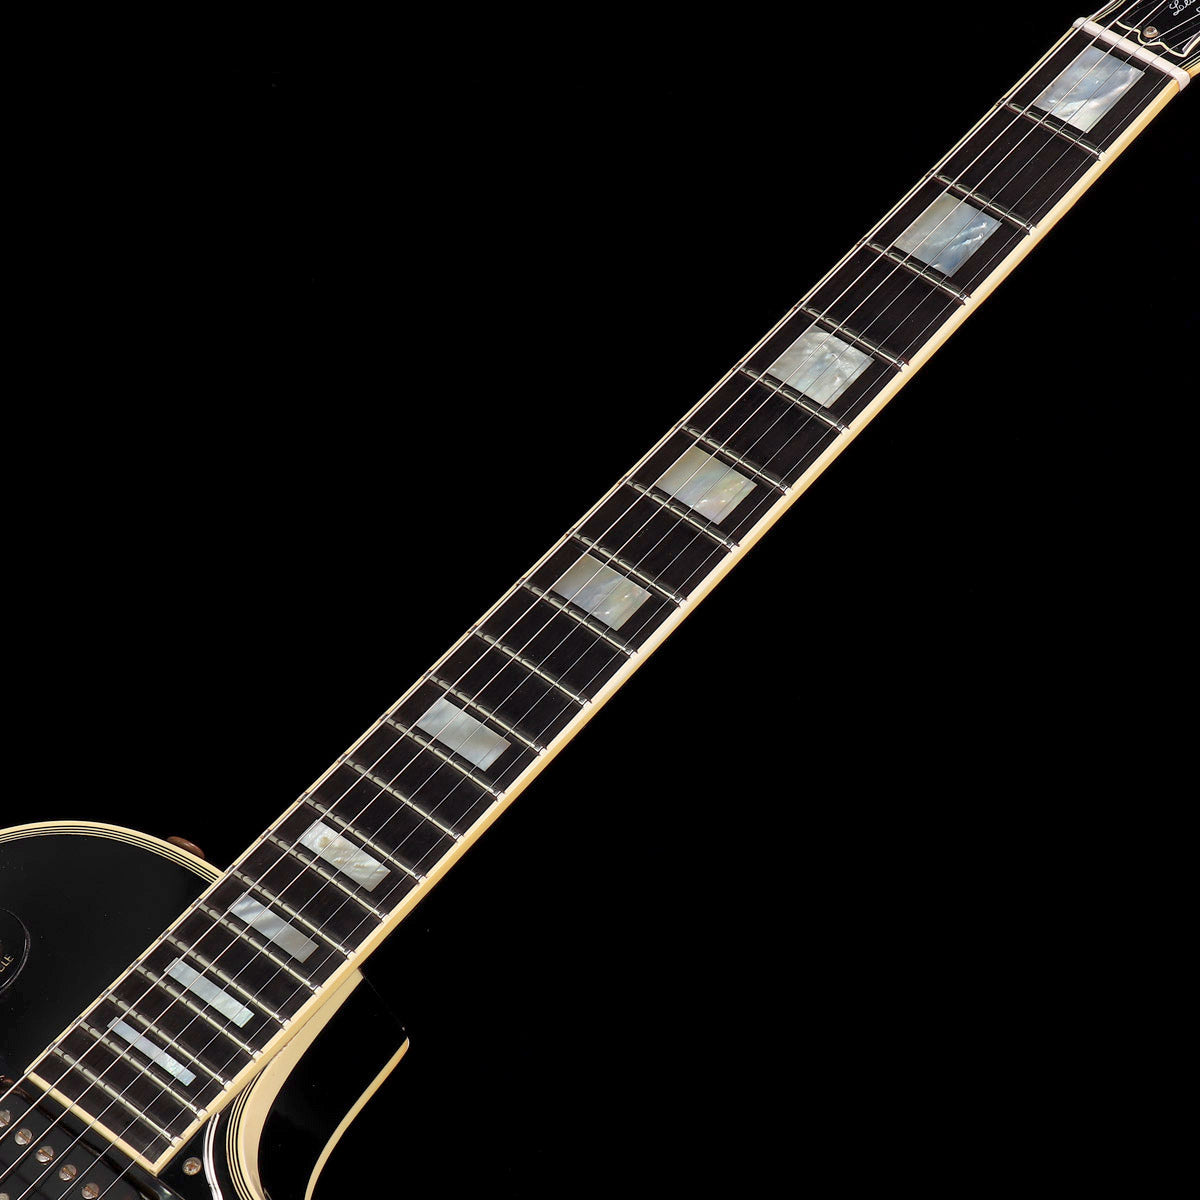 [SN 01300503] USED Gibson USA / Les Paul Custom Ebony [2000/4.54kg] Gibson Les Paul Custom [08]